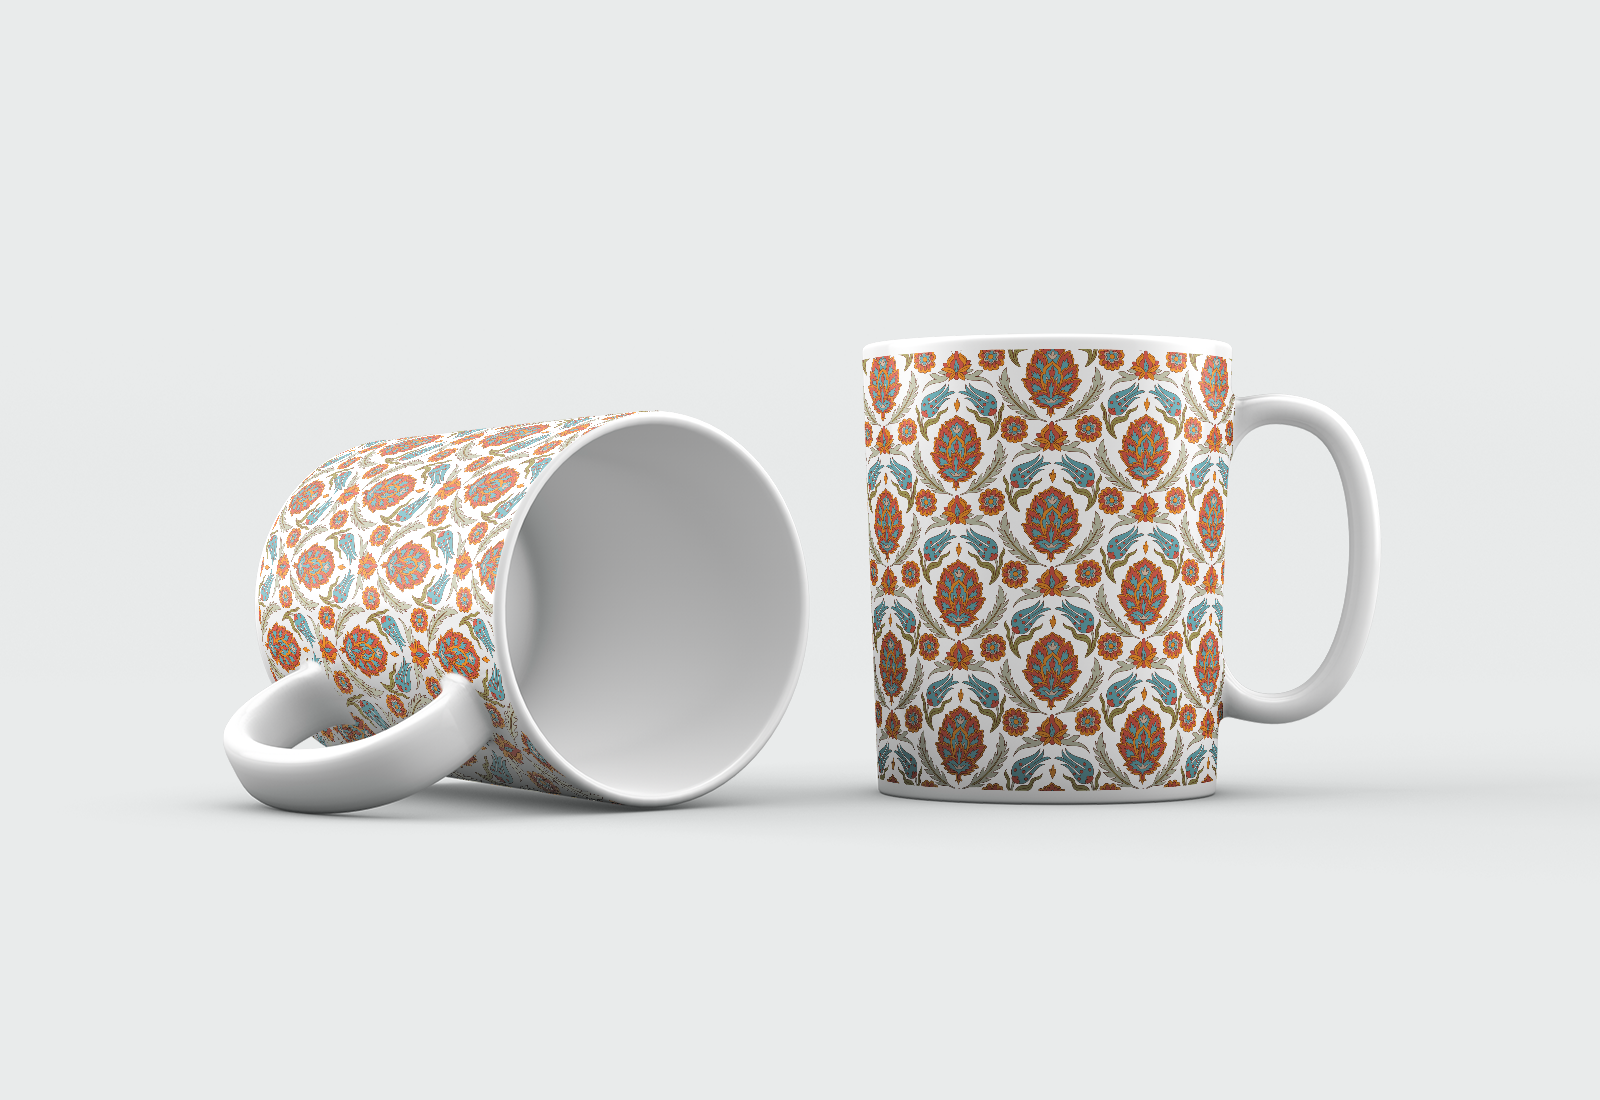 Persia style mugs